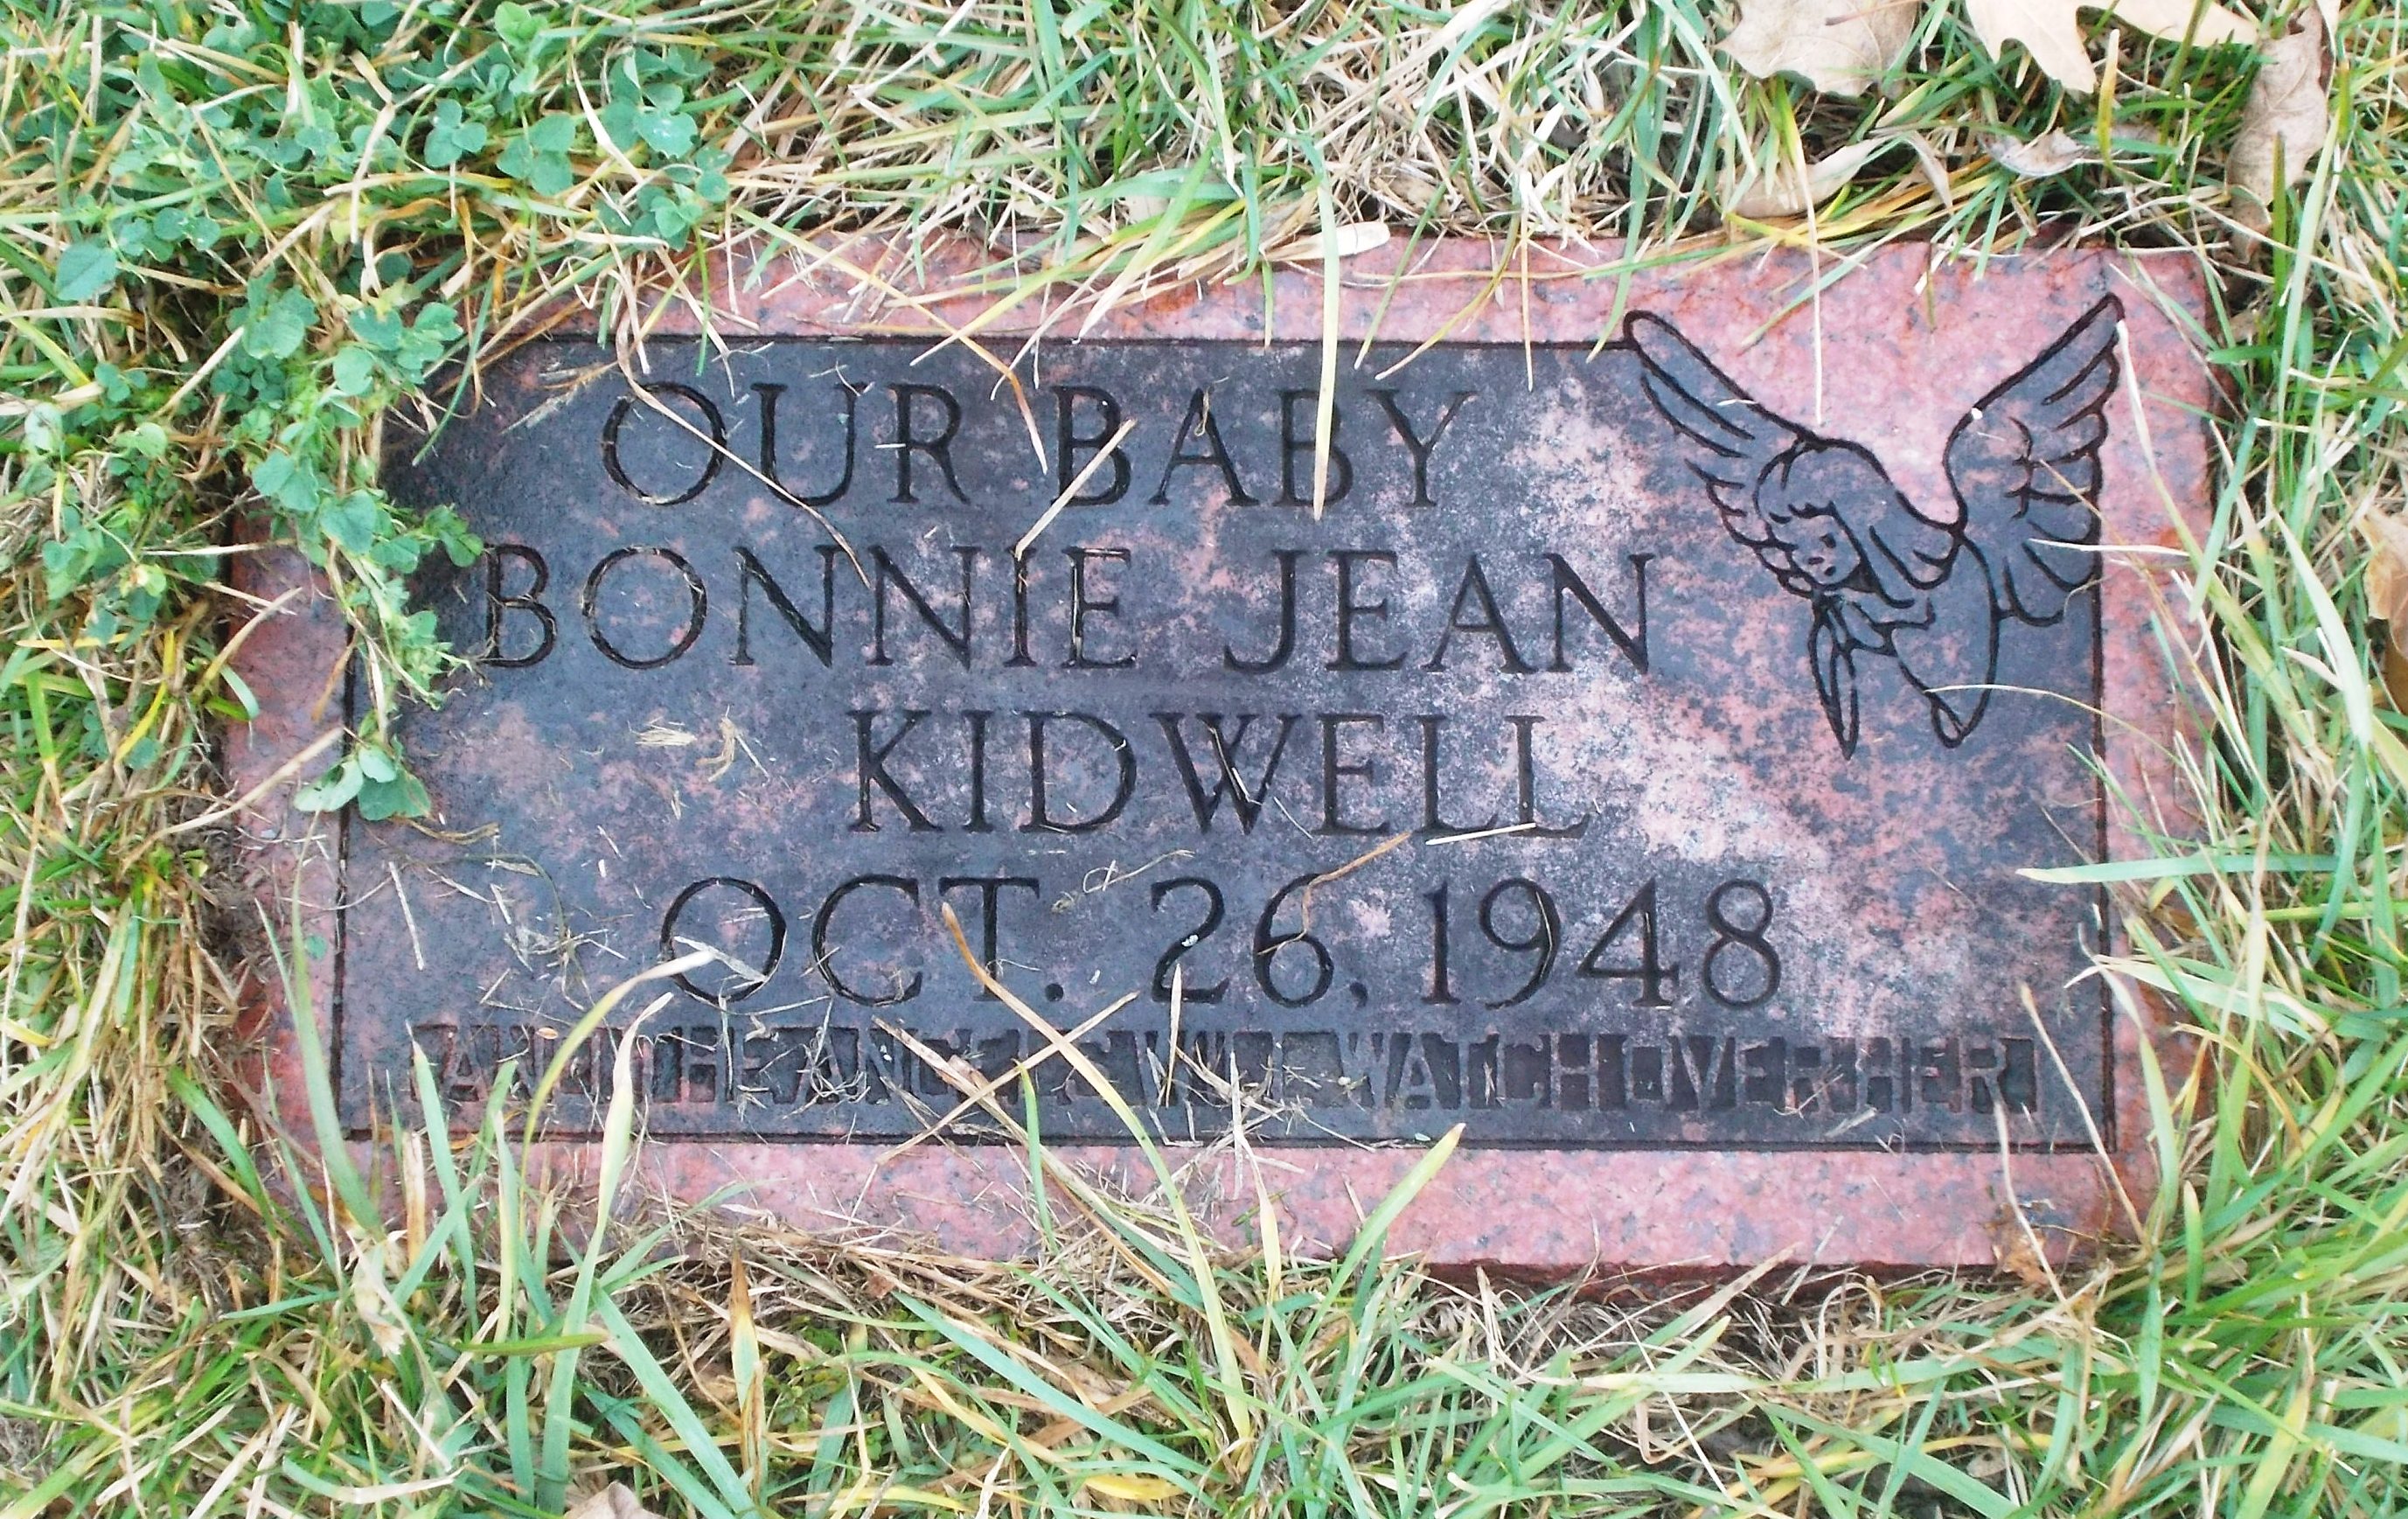 Bonnie Jean Kidwell